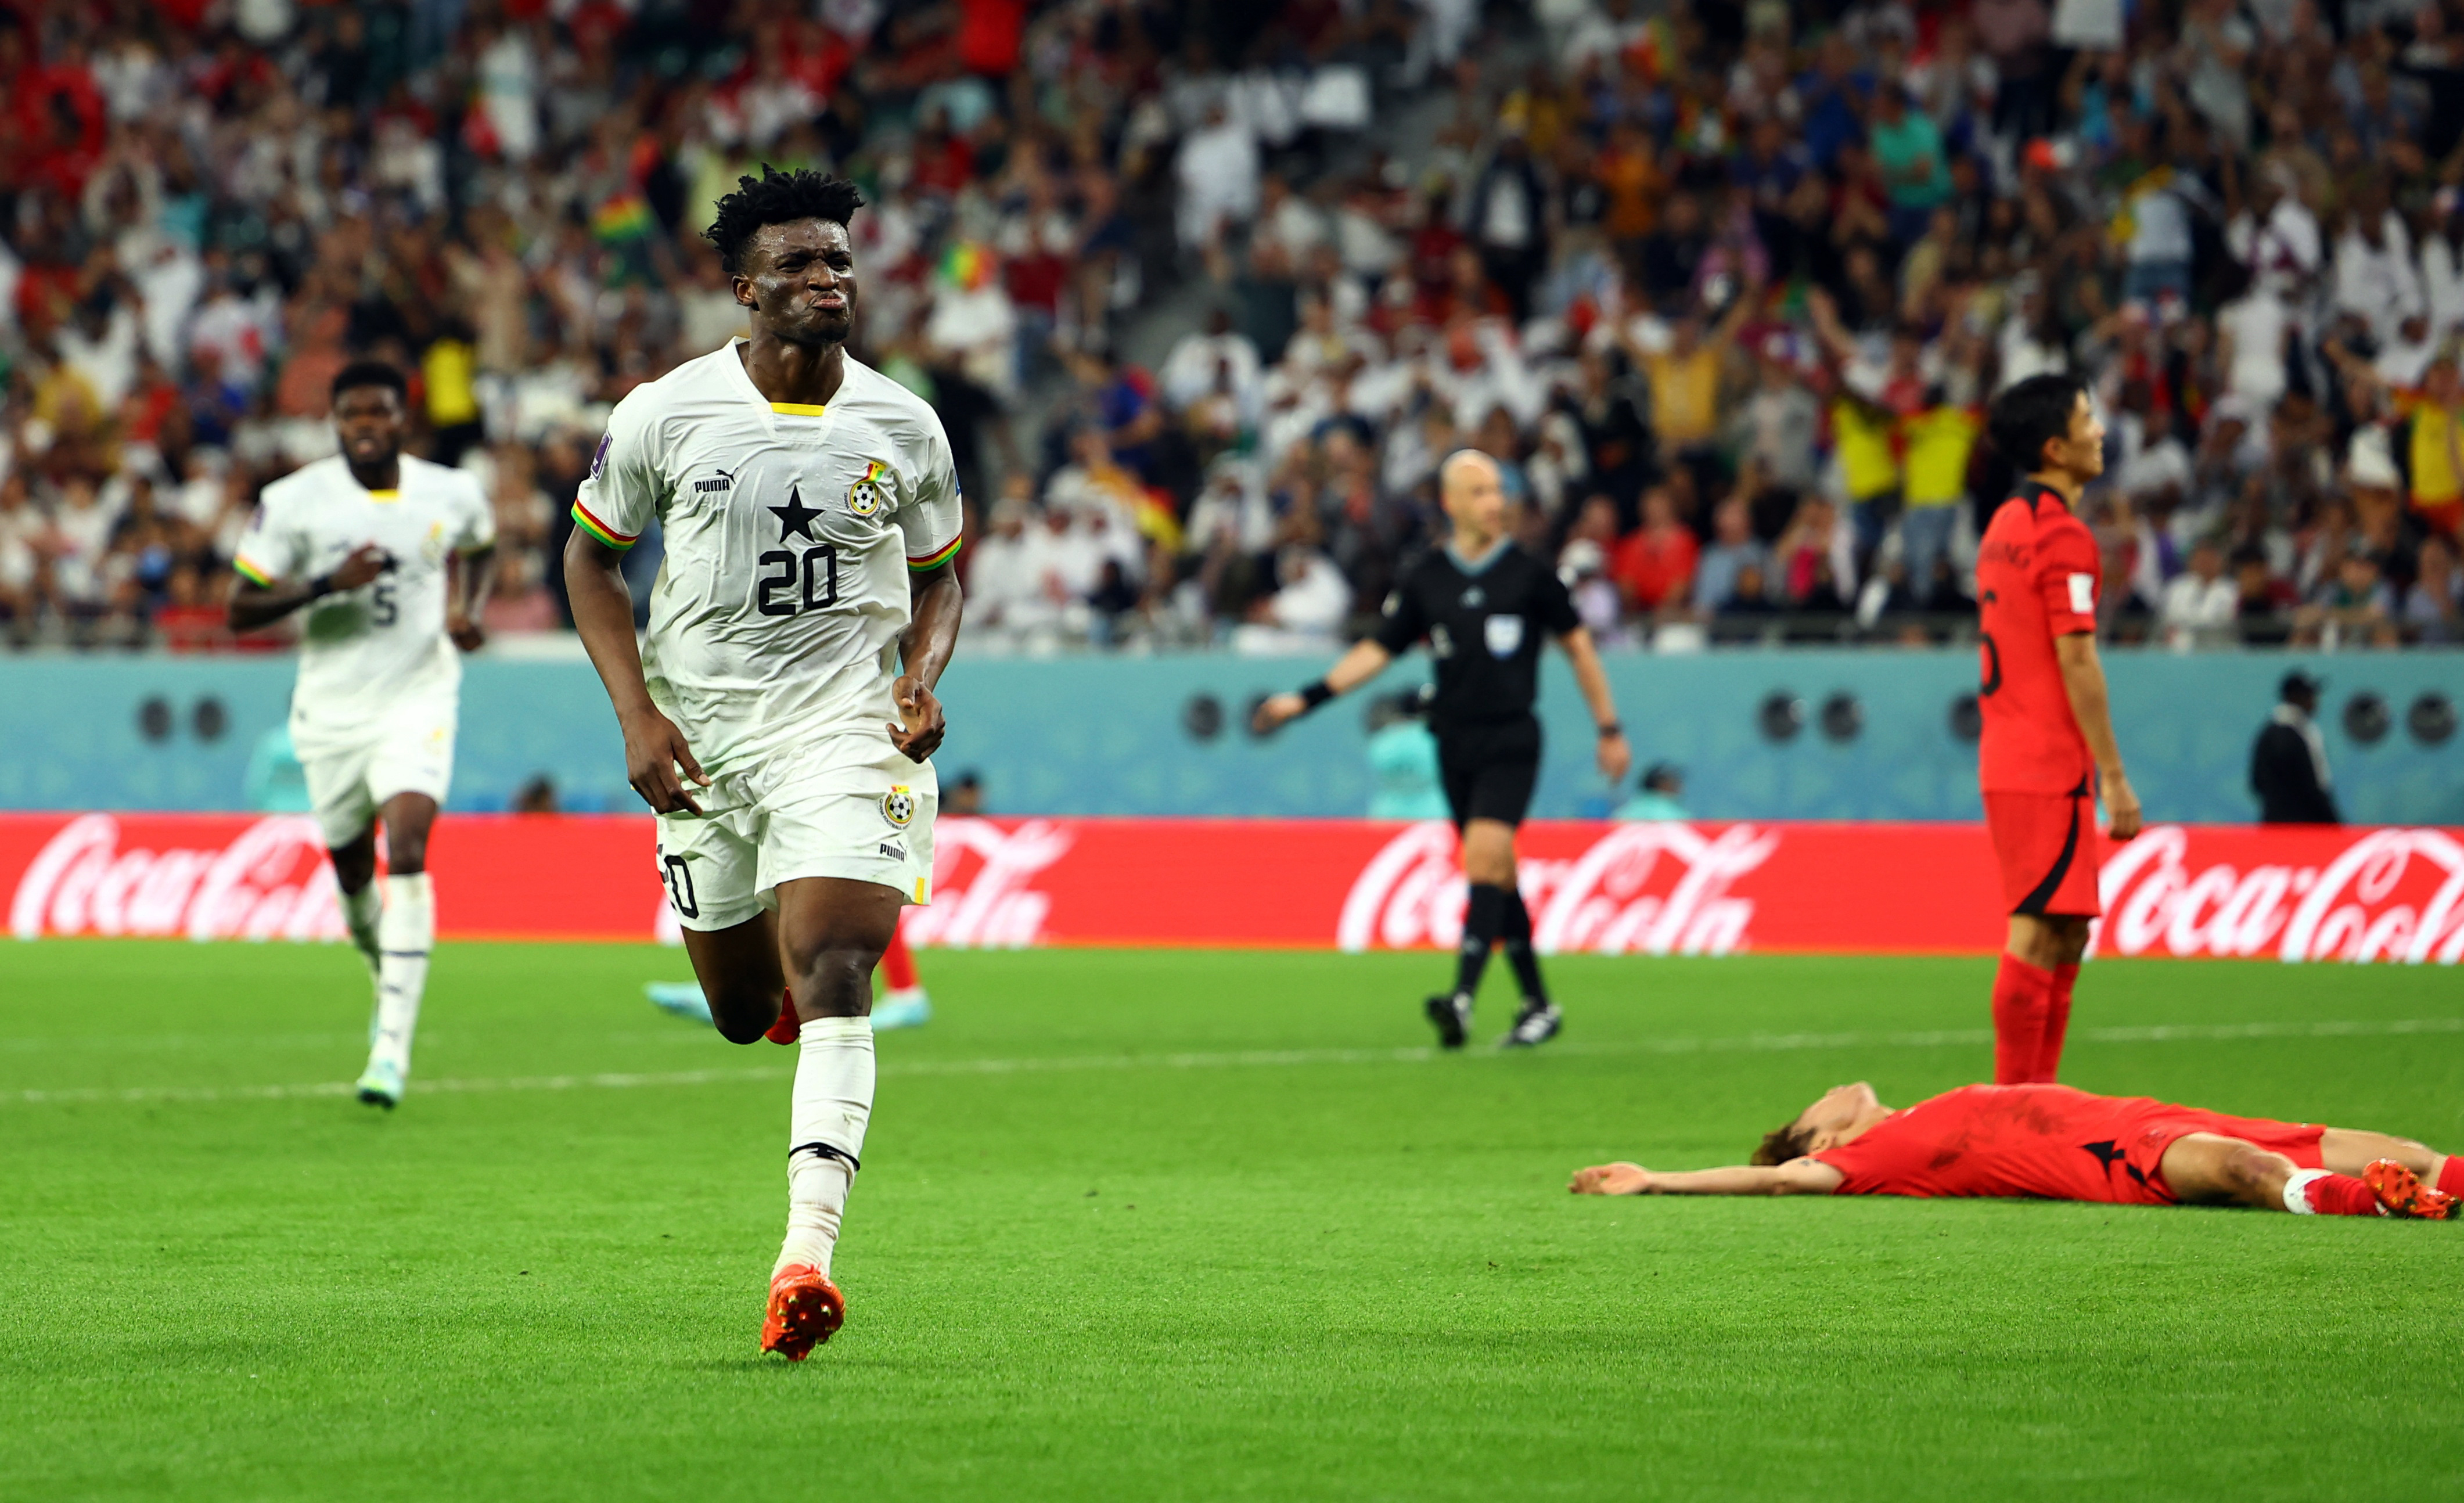 Mohammed Kudus marcó el tercer gol de Ghana para volverlos a enviar por arriba en el marcador. Imagen: REUTERS/Molly Darlington